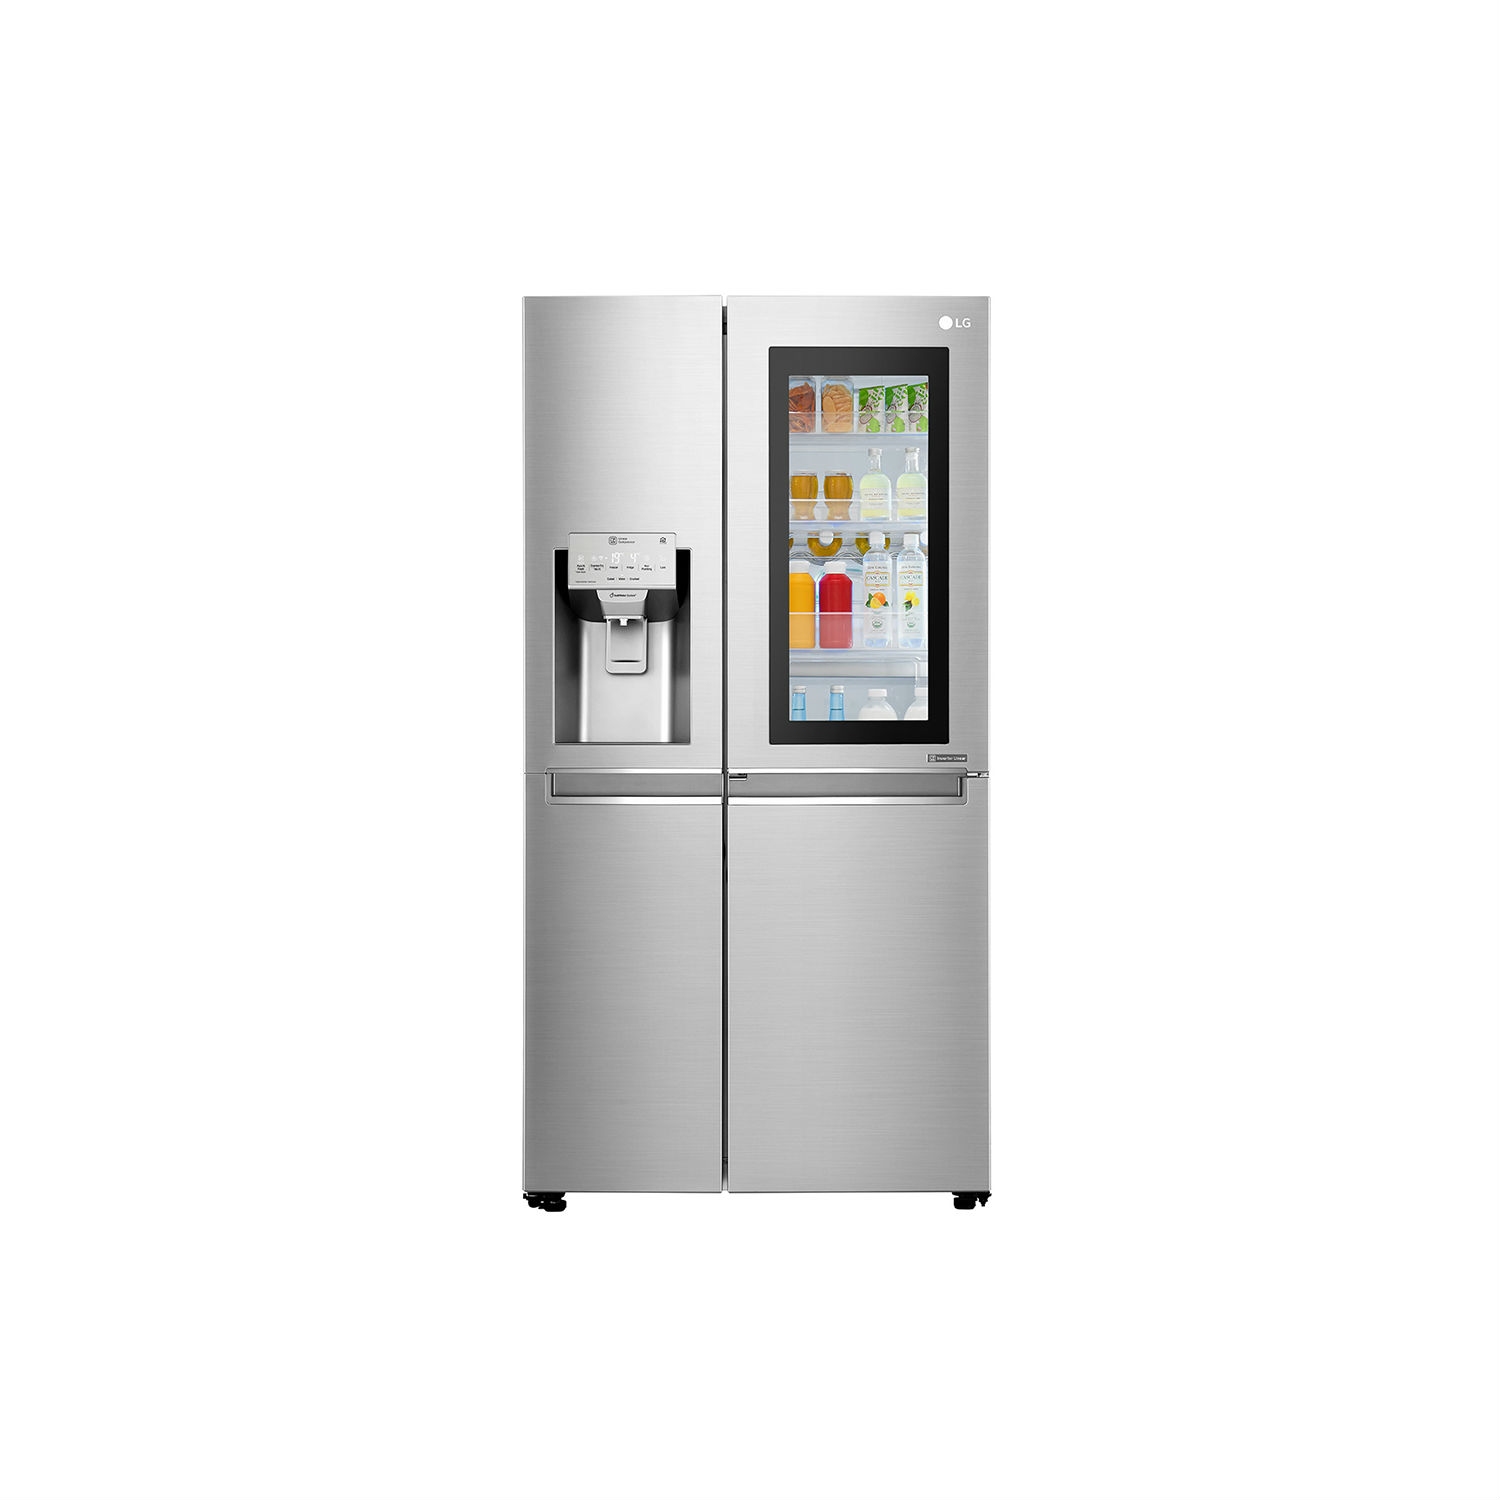 LG ELECTRONICS InstaView Door-in-Door American Style Fridge Freezer - PREMIUM STEEL - A++ Energy Rated - 0